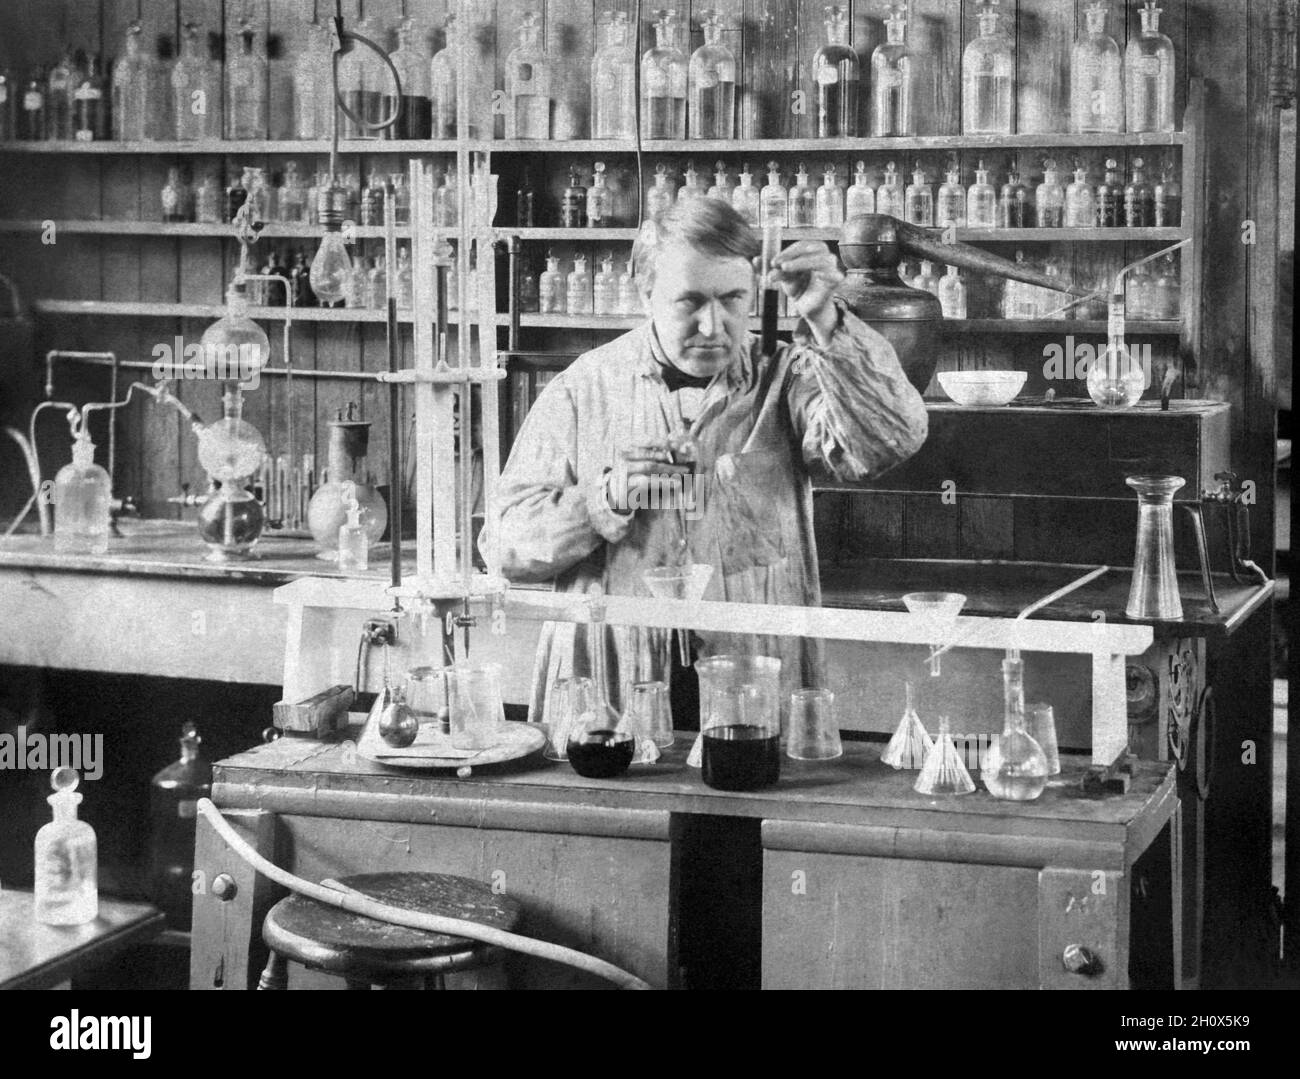 Thomas Alva Edison (1847–1931), qui a été décrit comme le plus grand inventeur des États-Unis, travaille dans le bâtiment du département de chimie de son complexe de laboratoire West Orange, New Jersey, en 1890.(ÉTATS-UNIS) Banque D'Images